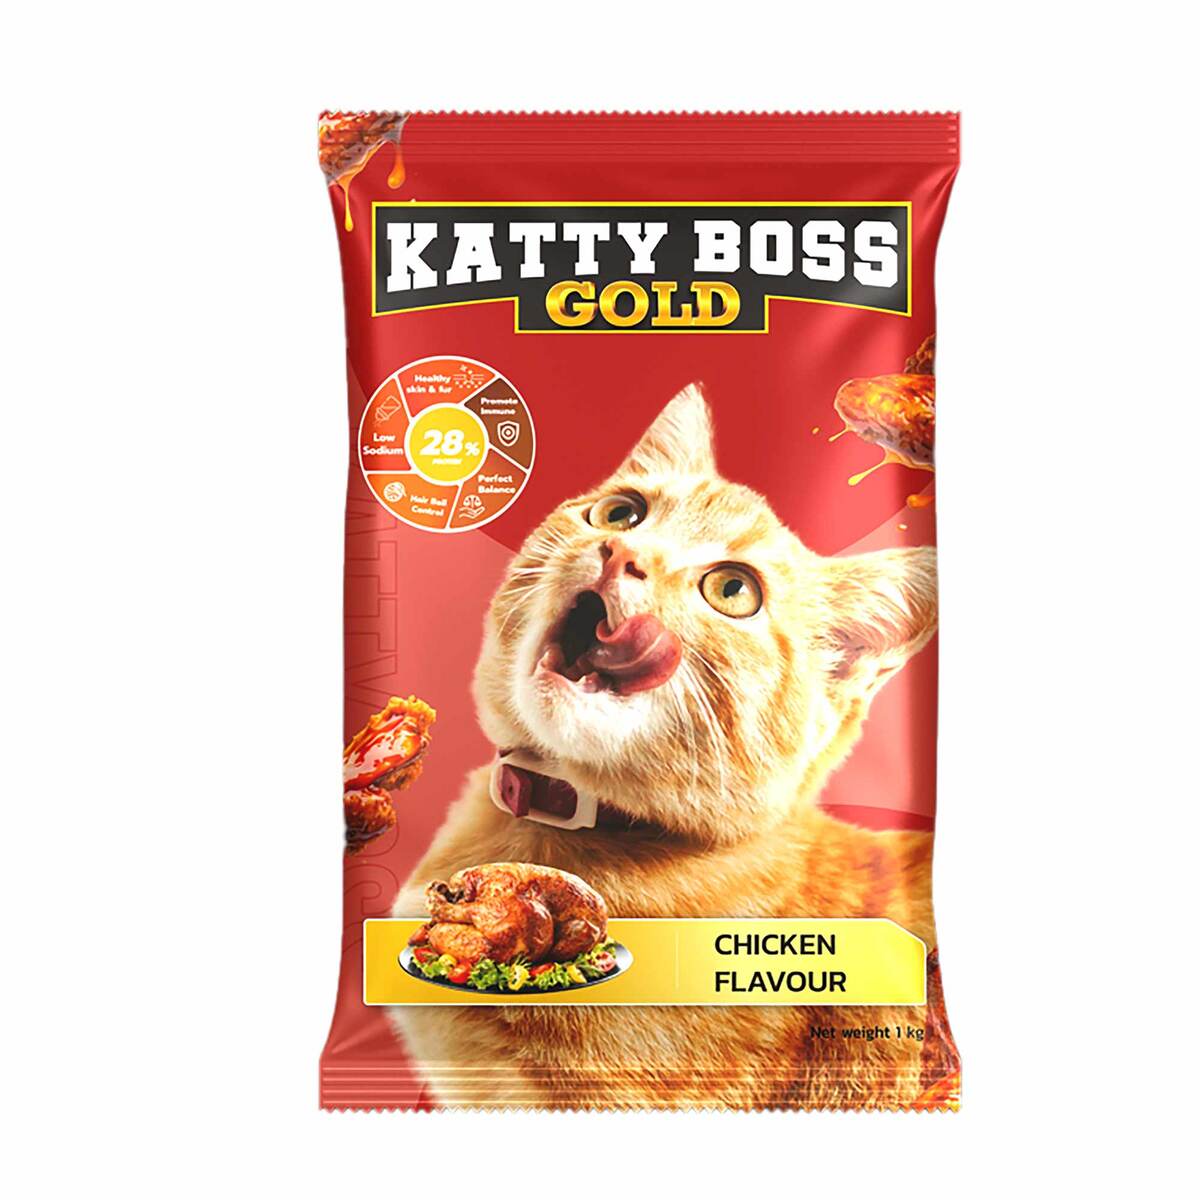 Katty Boss Gold Chicken Flavour Cat Food 1 kg